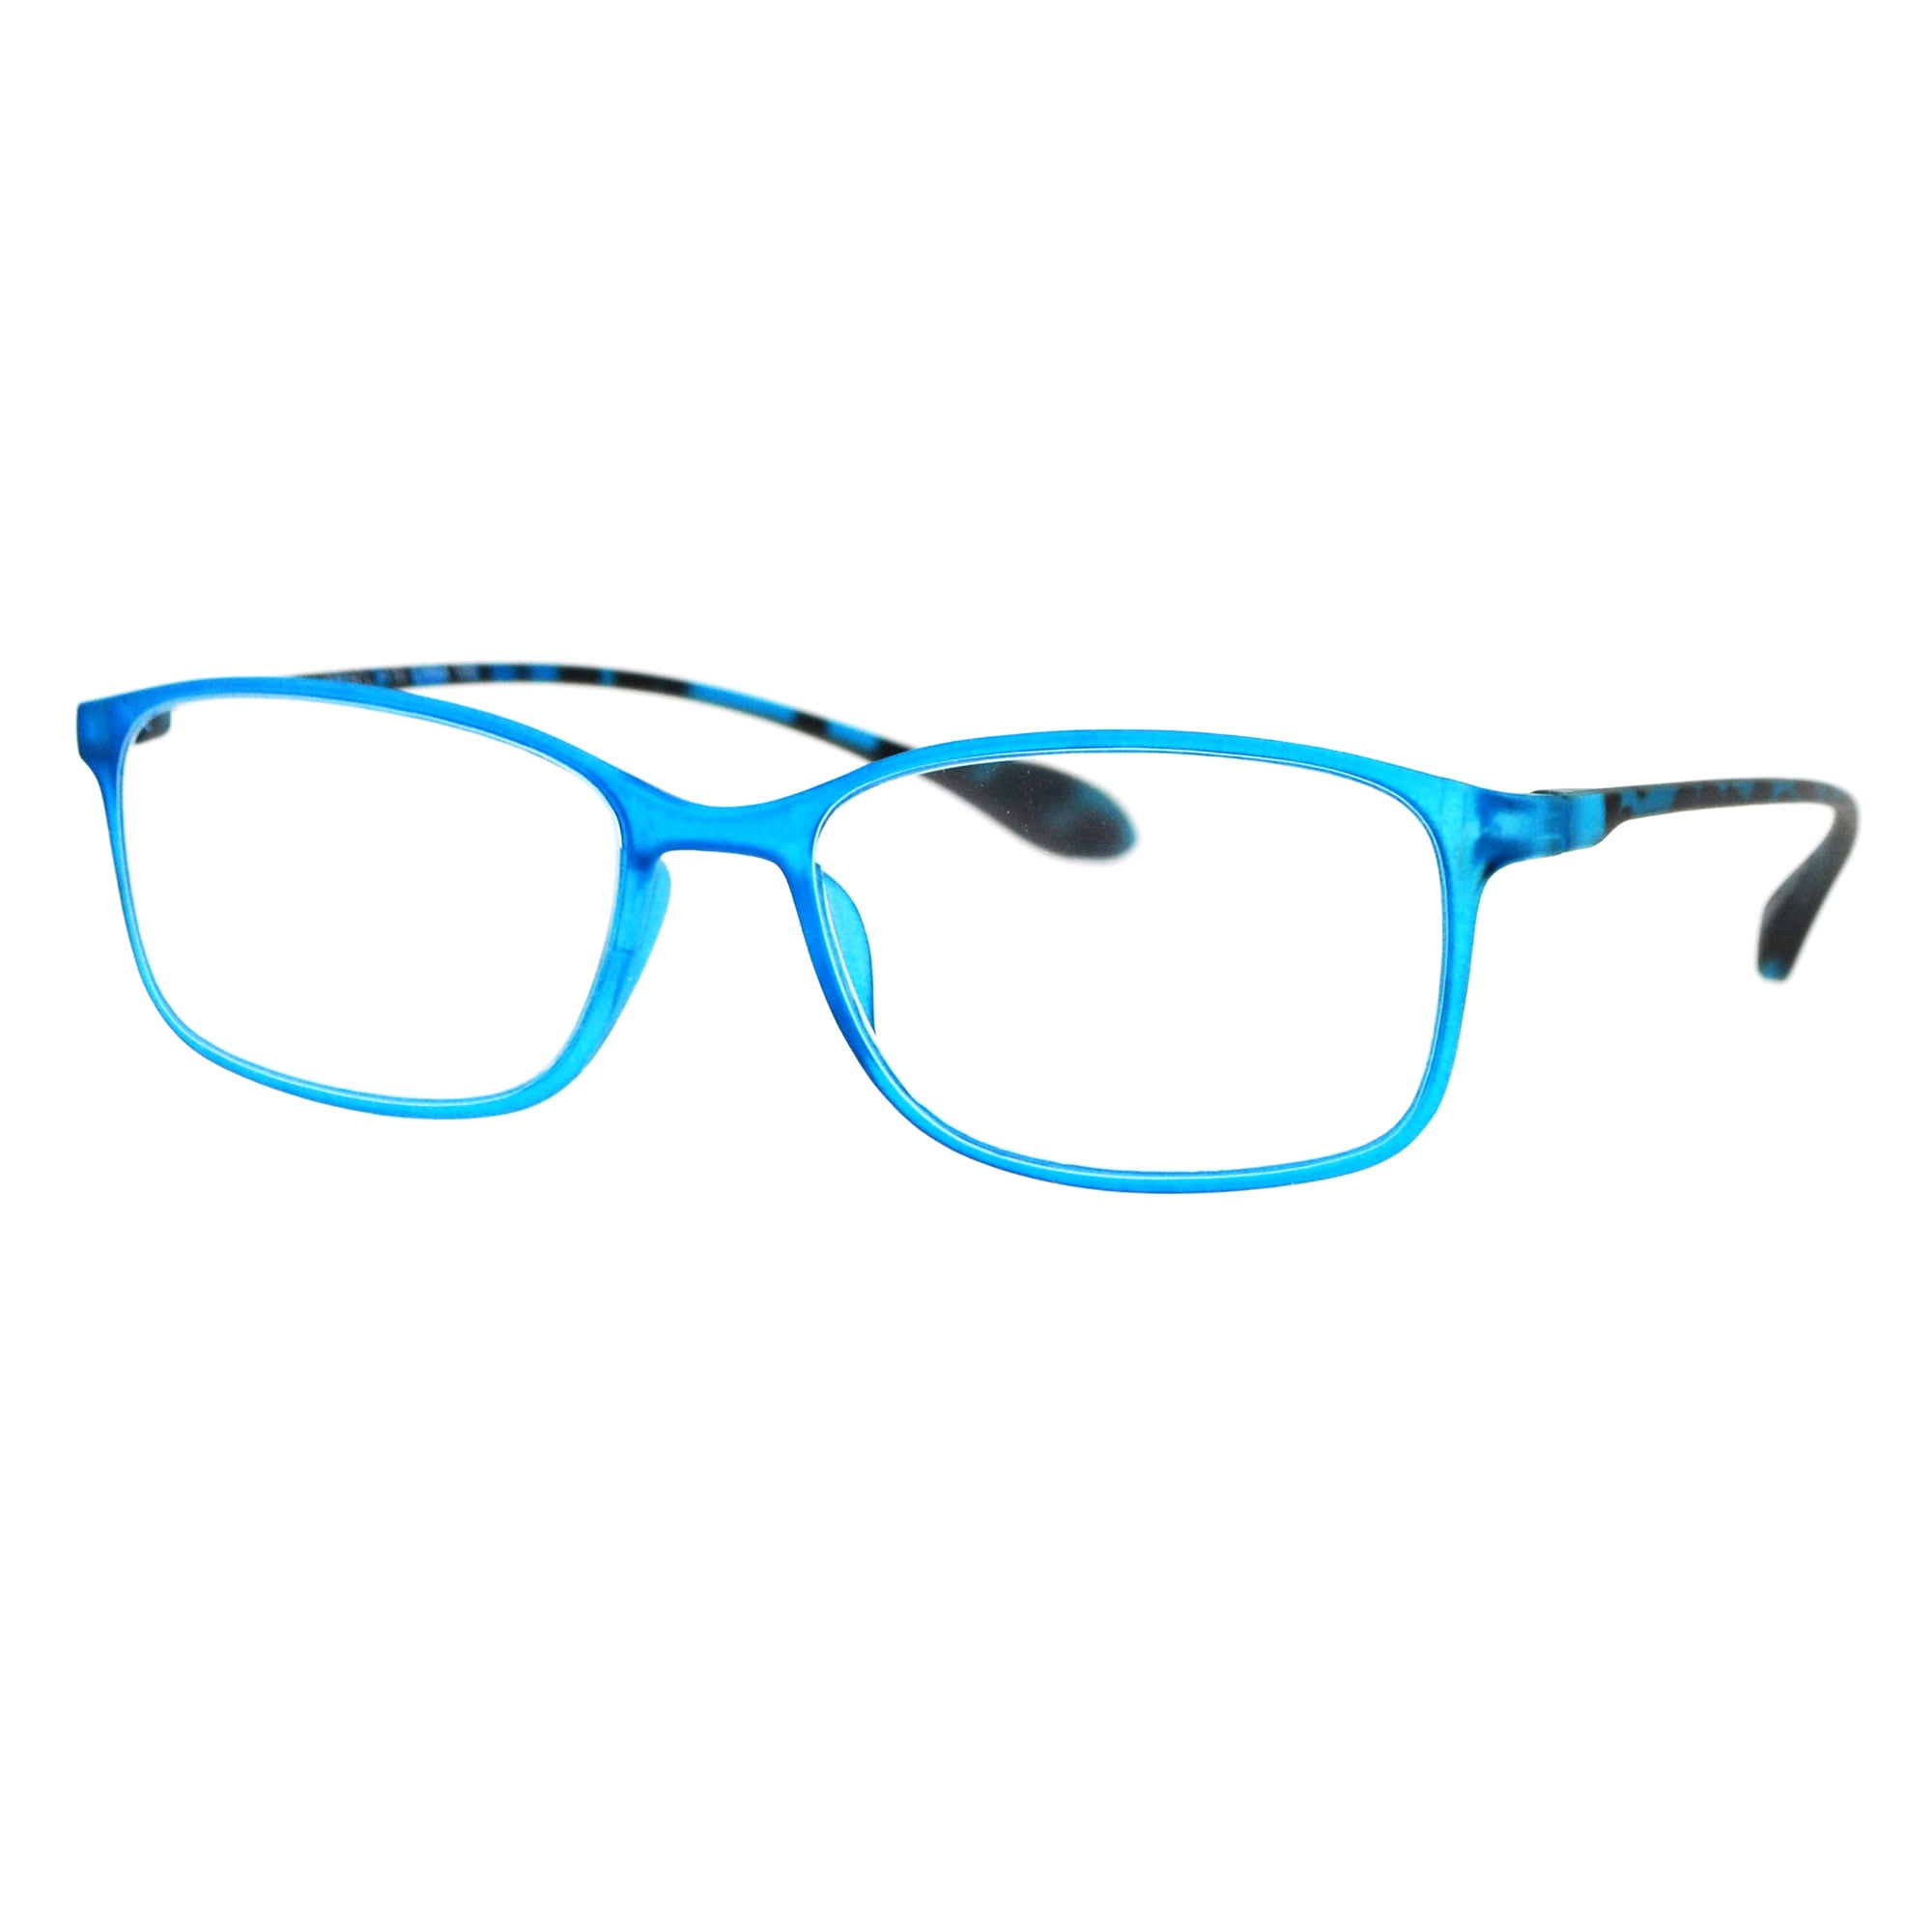 Modern Narrow Matte Frost Plastic Rectangular Reading Glasses Blue +1.5 ...